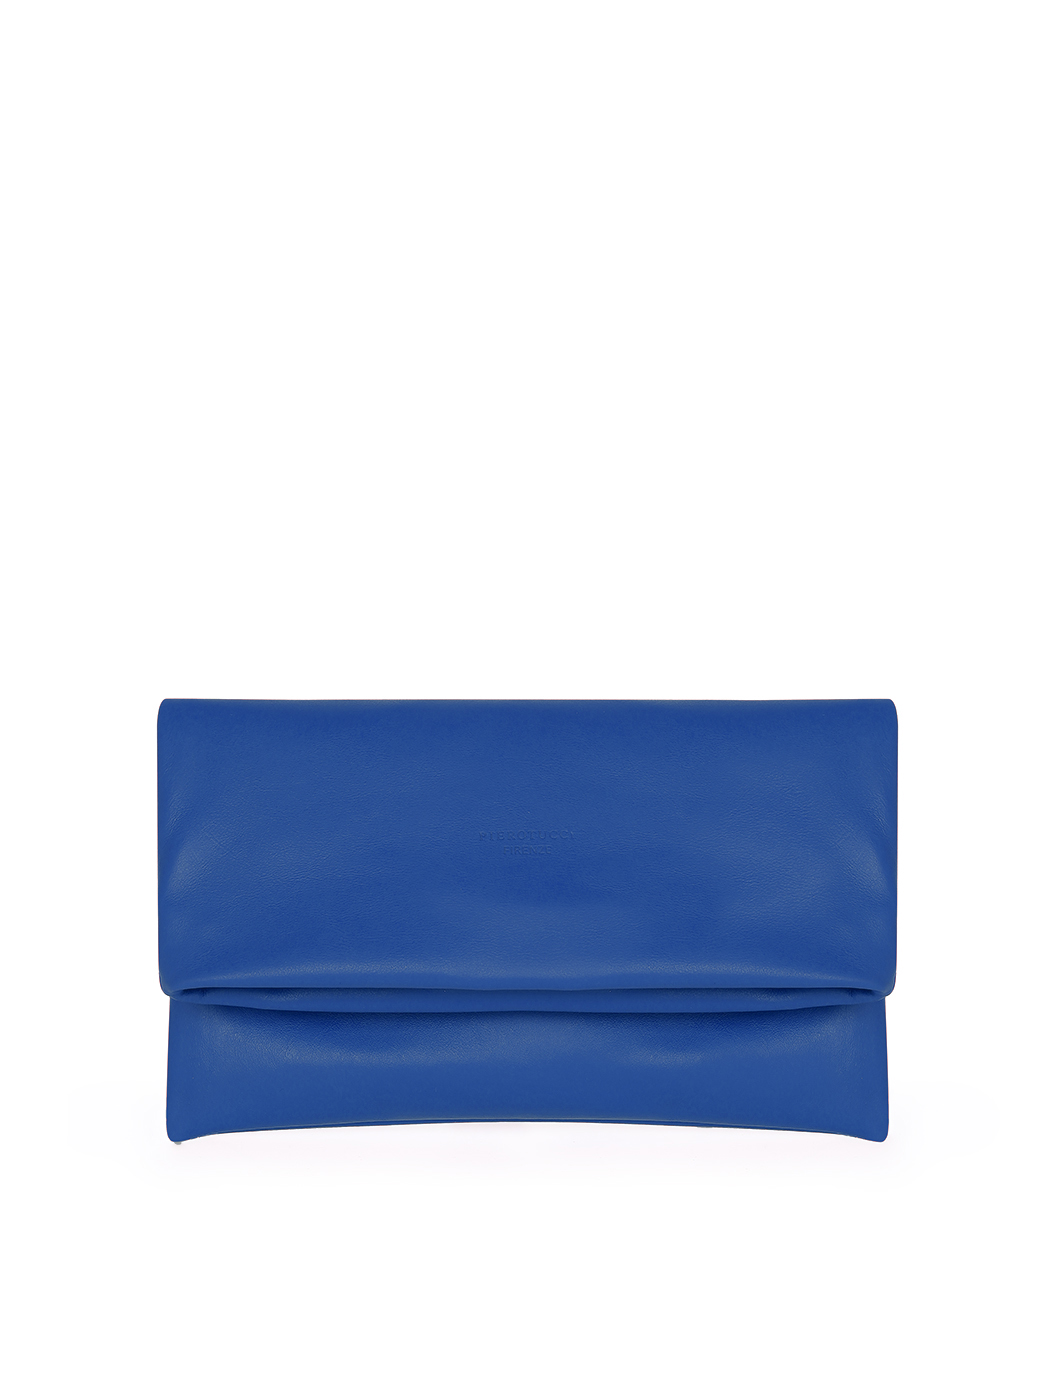 Haryana Craft Casual Blue Clutch Blue - Price in India | Flipkart.com